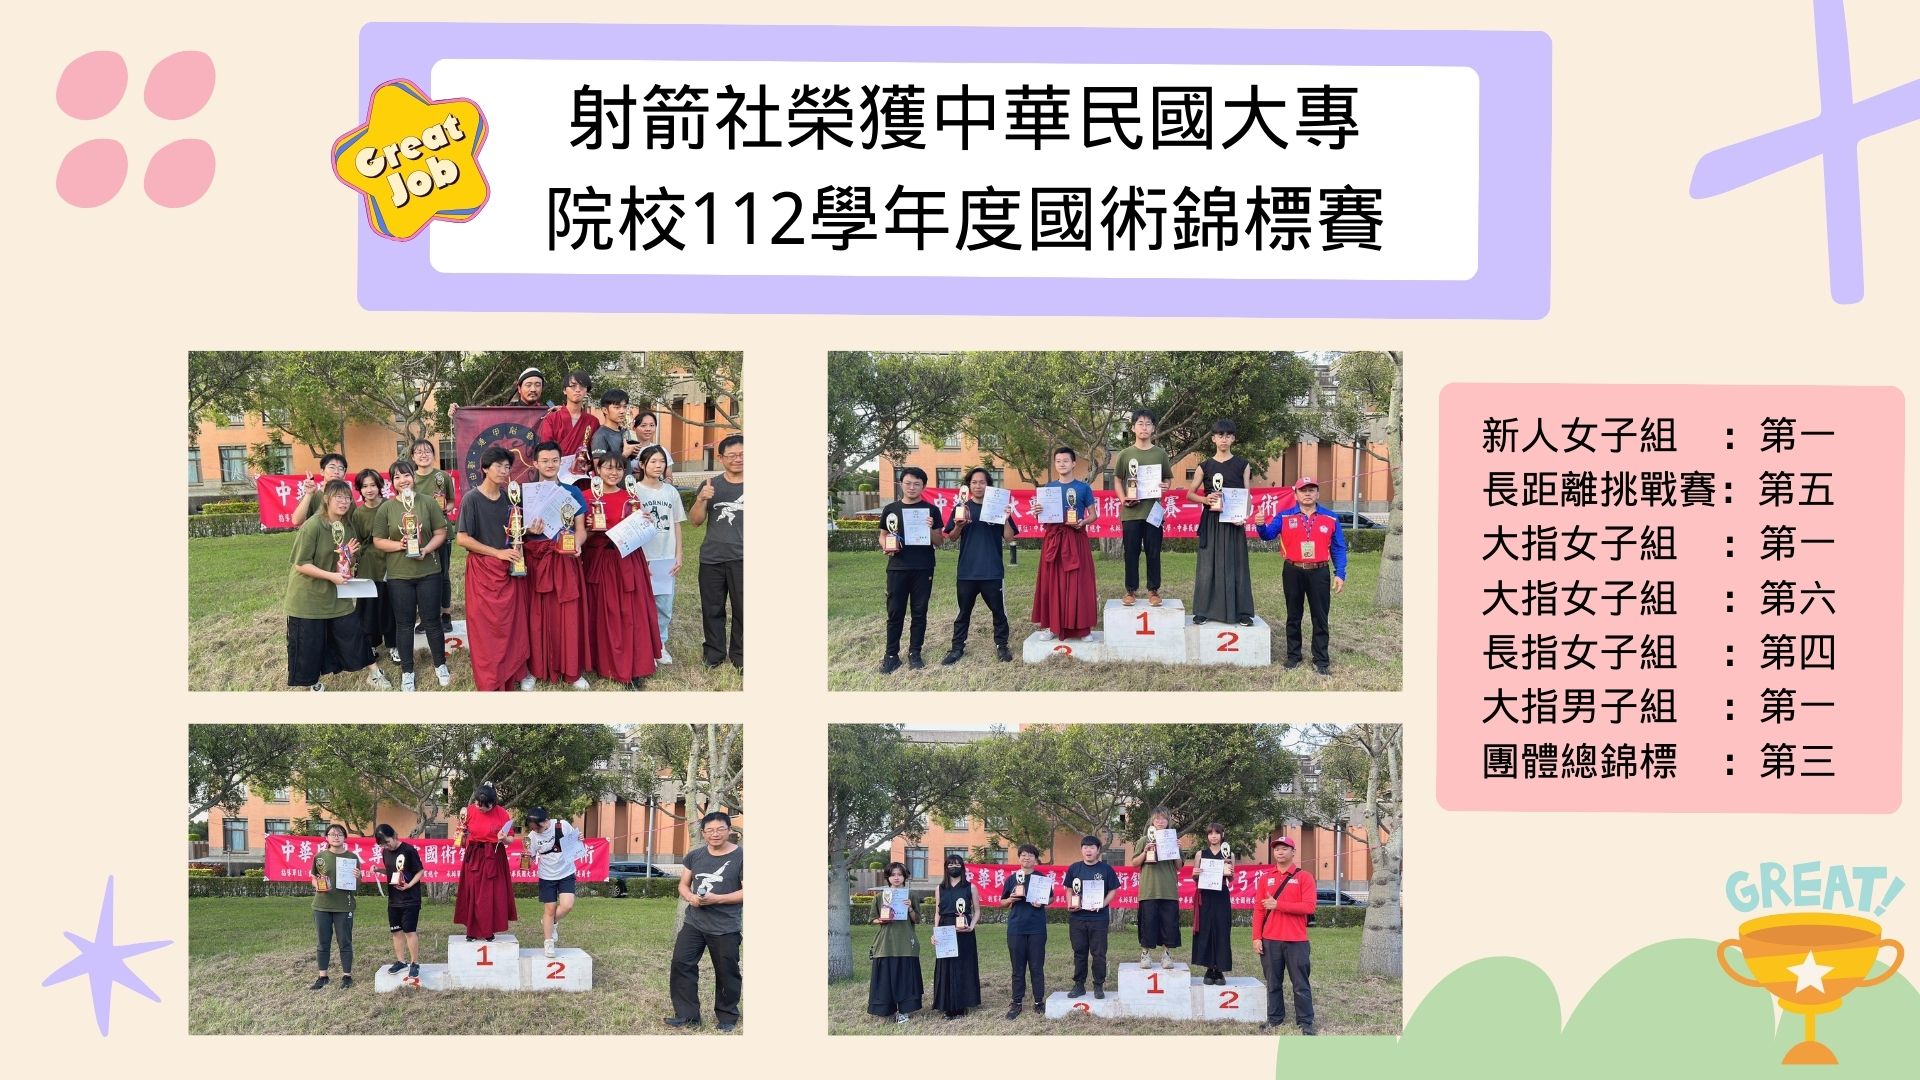 射箭社榮獲中華民國大專院校112學年度國術錦標賽